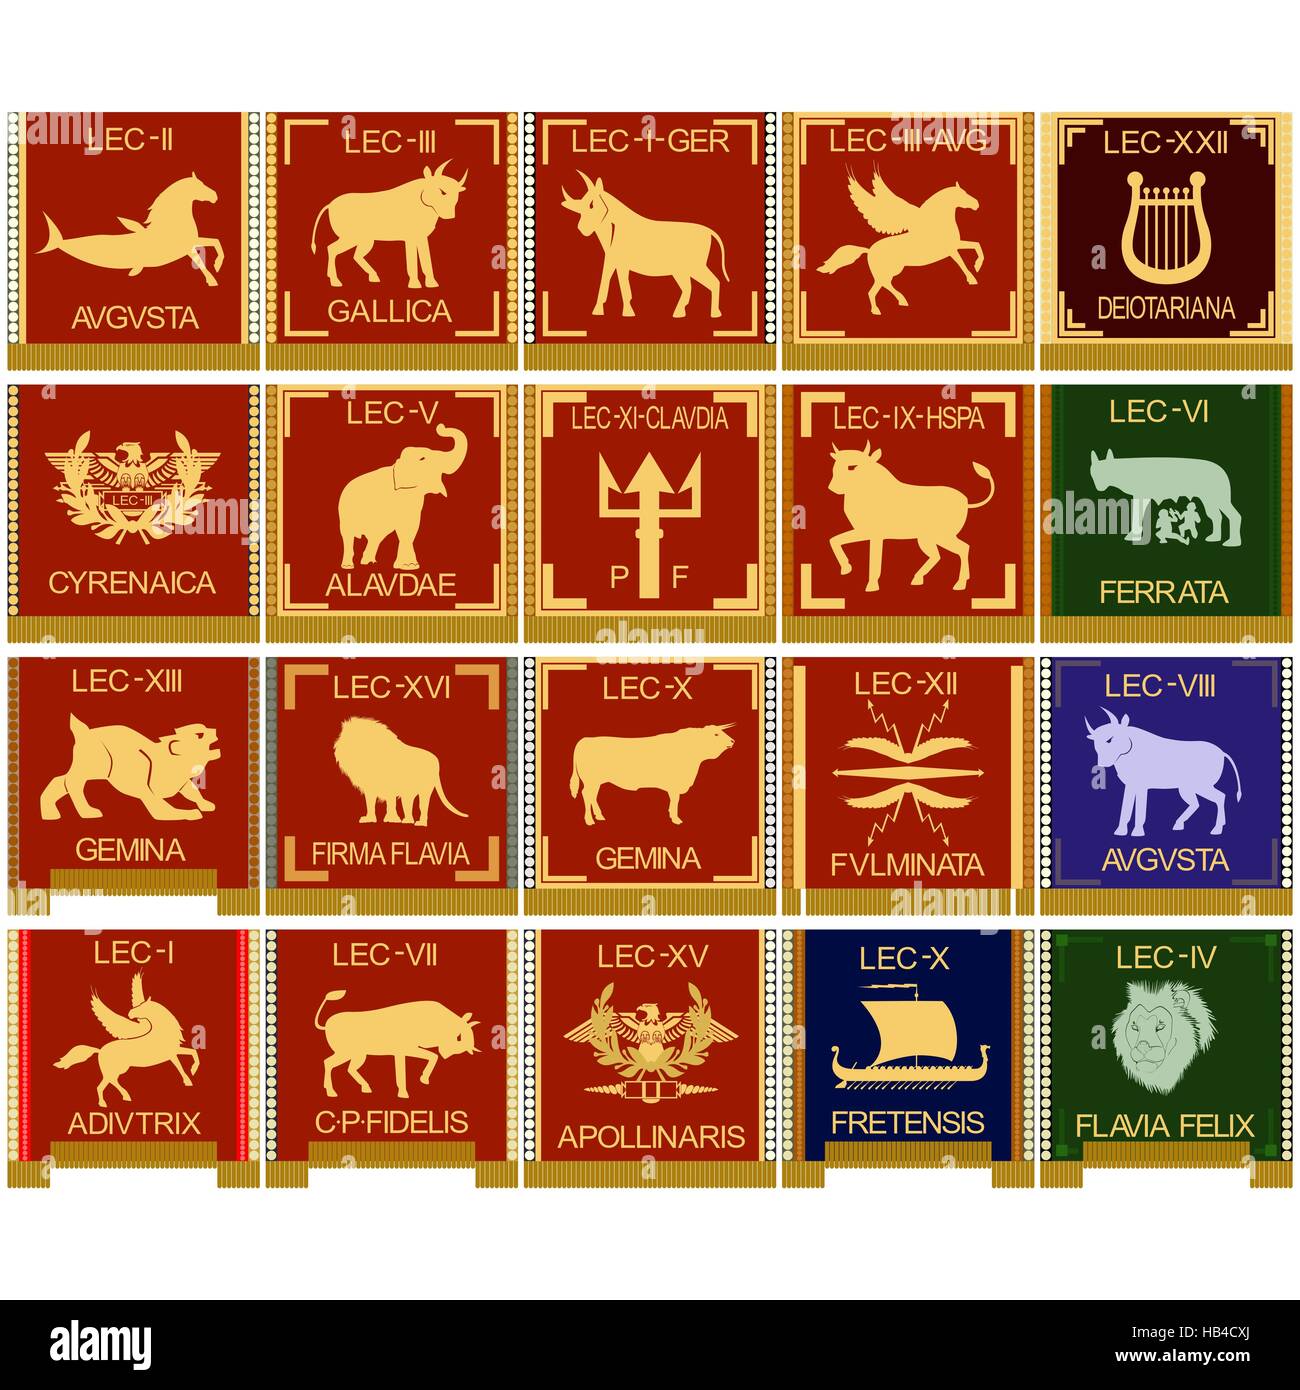 Le jeu de caractères de les légions de la Rome antique. L'illustration sur un fond blanc. Banque D'Images